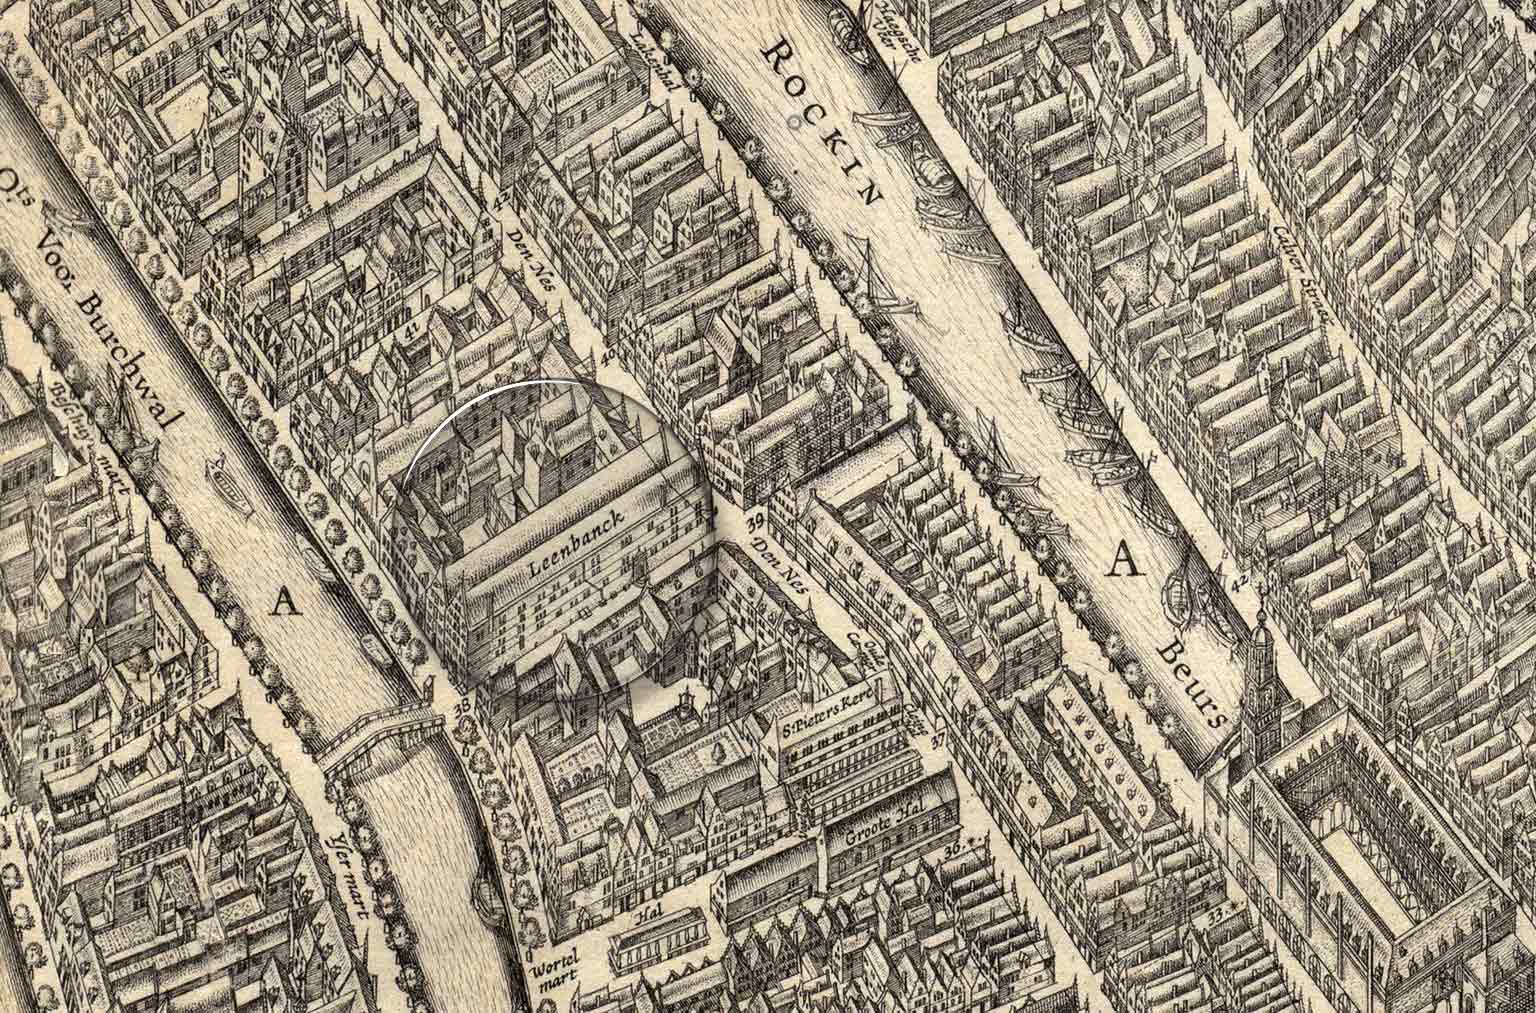 Stadsbank van Lening, Amsterdam, detail van een kaart uit 1625